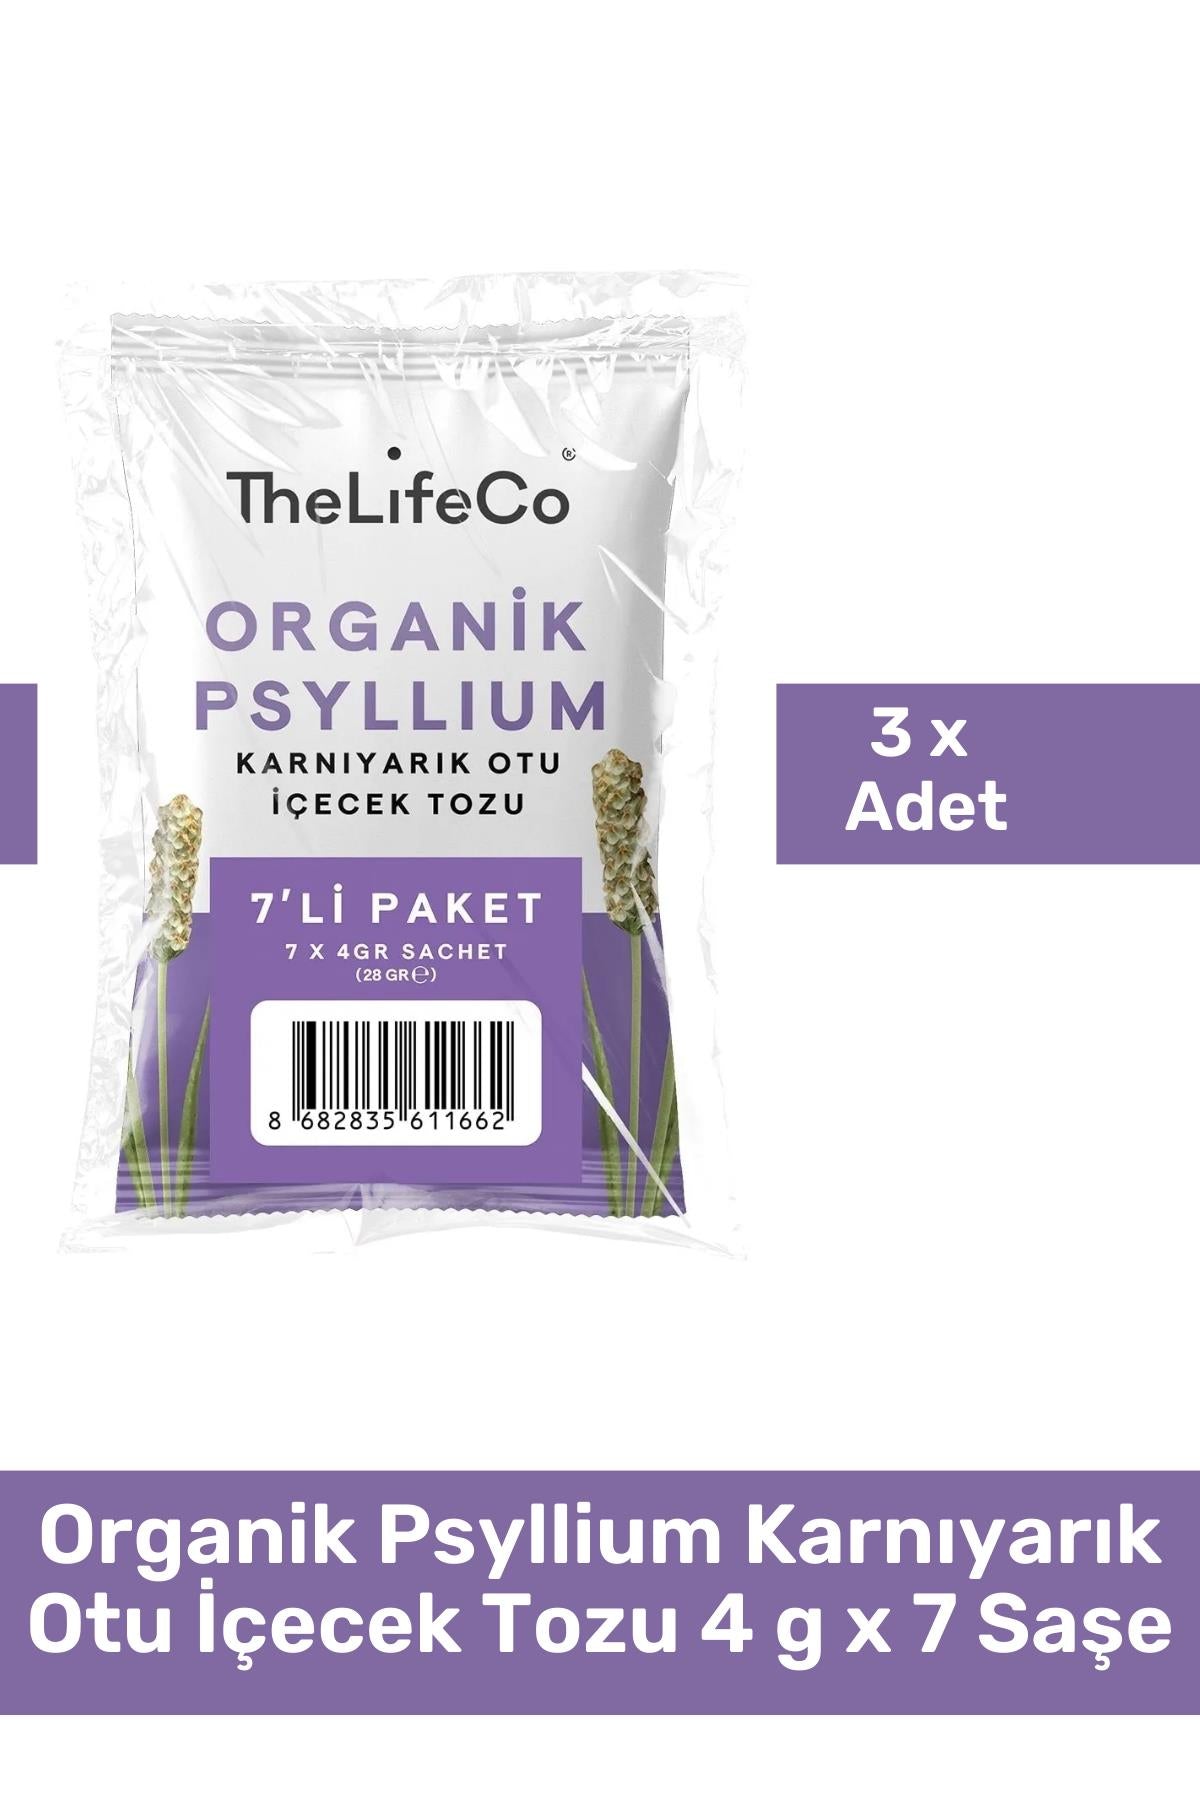 TheLifeCo Organik Psyllium Karnıyarık Otu İçecek Tozu 4 g x 7 Saşe 3'lü Paket